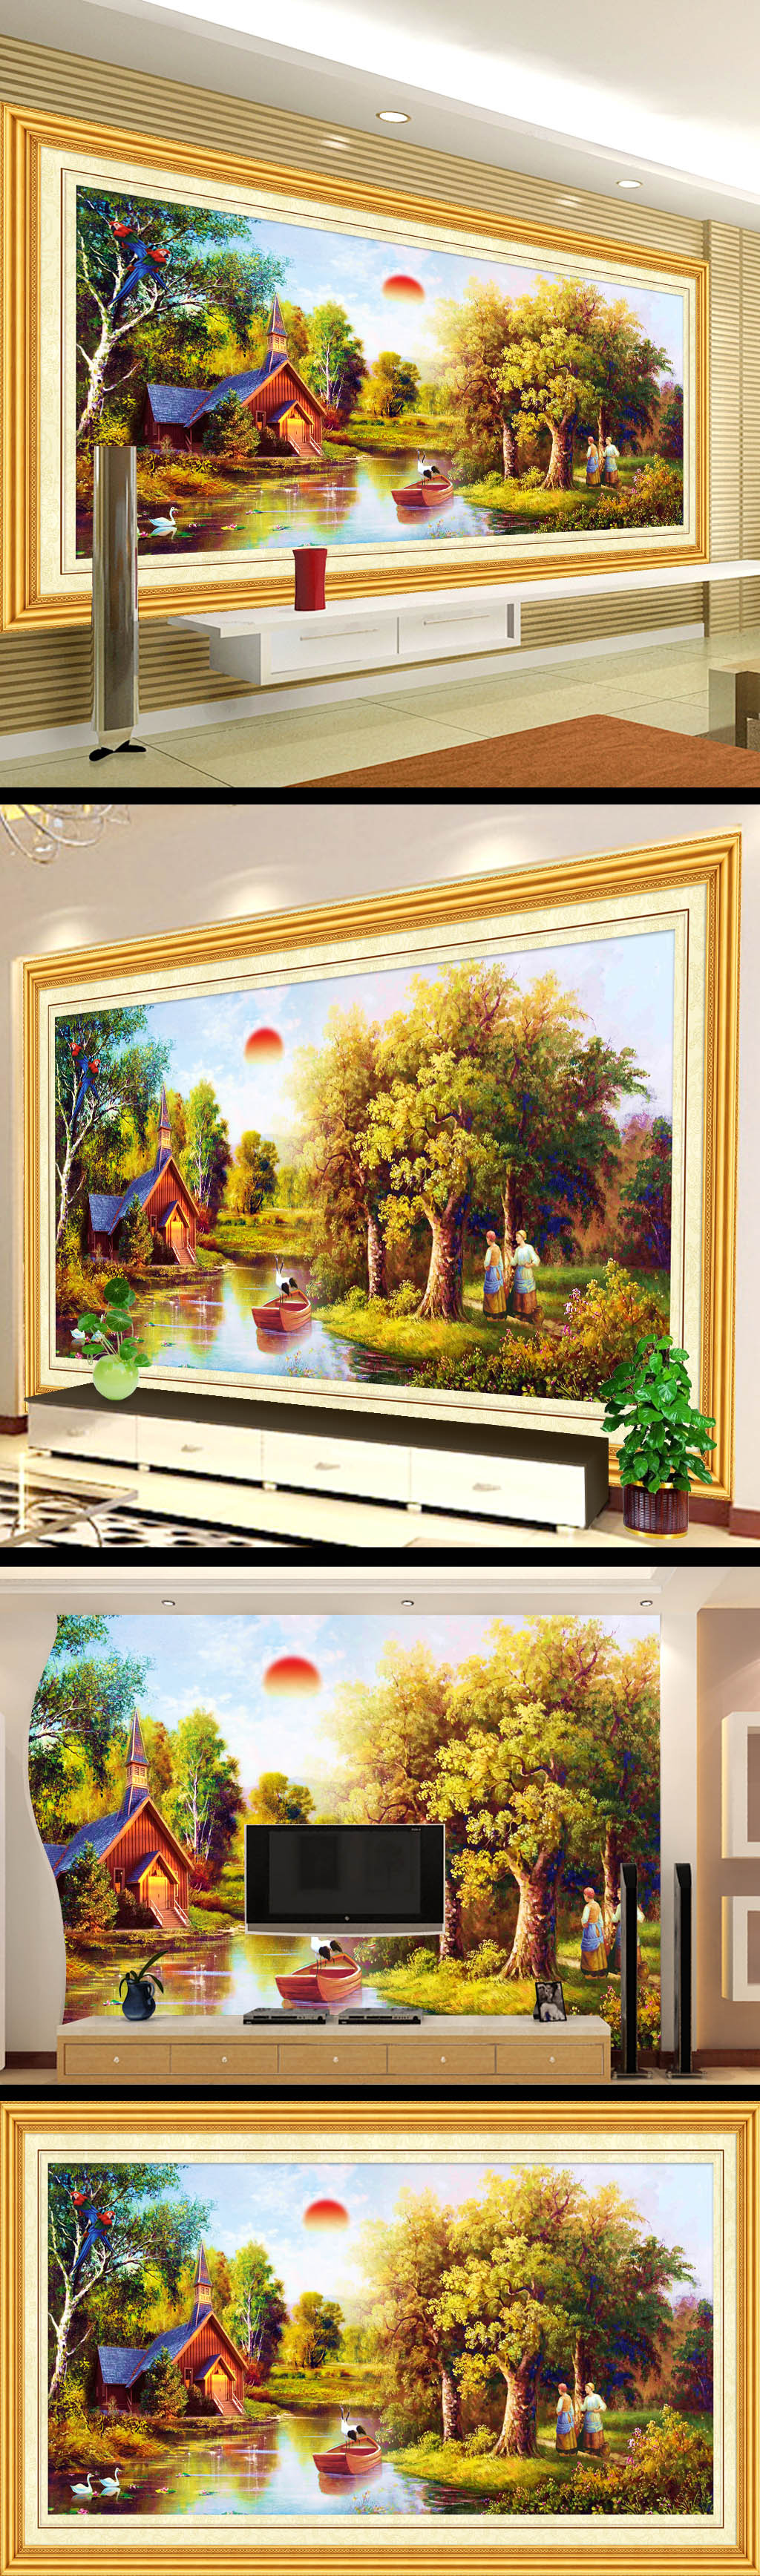 背景 风景画/[版权图片]树林风景画背景电视墙设计